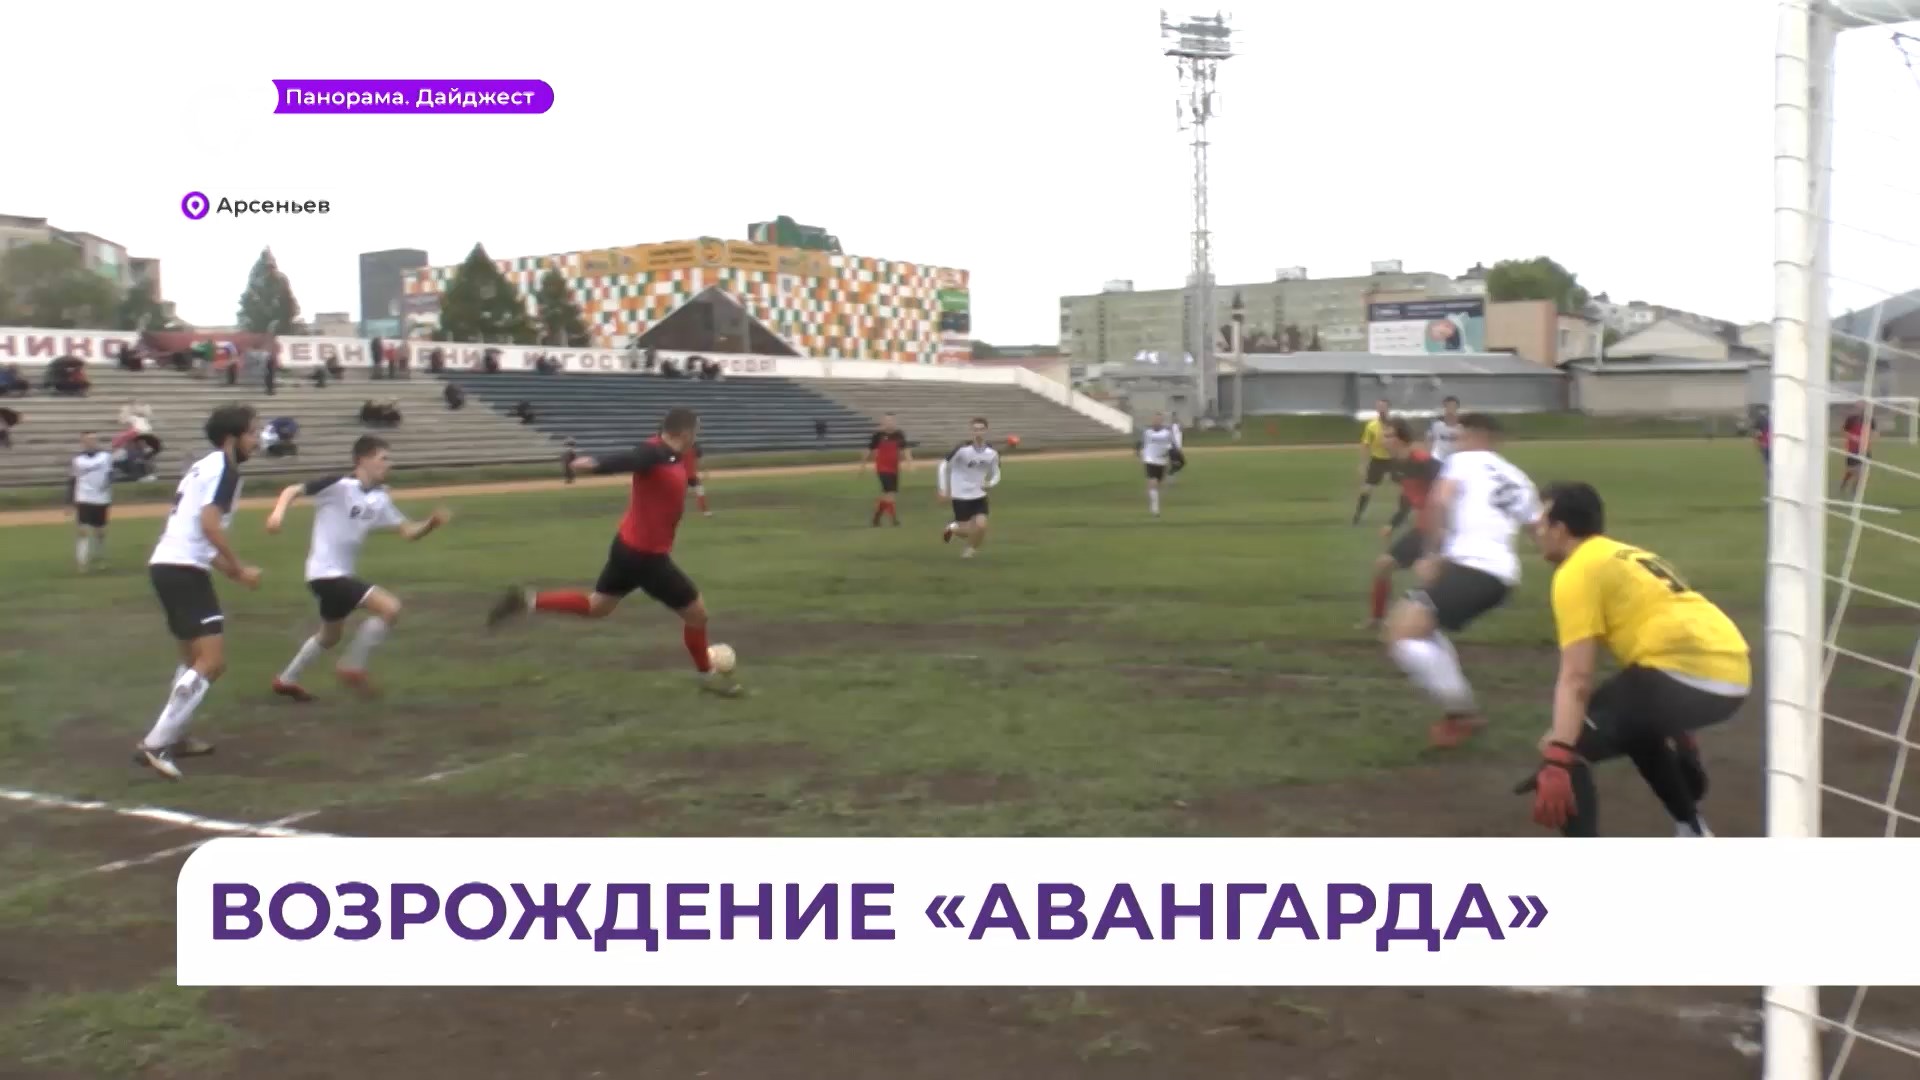 Арсеньевский ФК «Авангард» на своем поле уступил в матче уссурийским футболистам